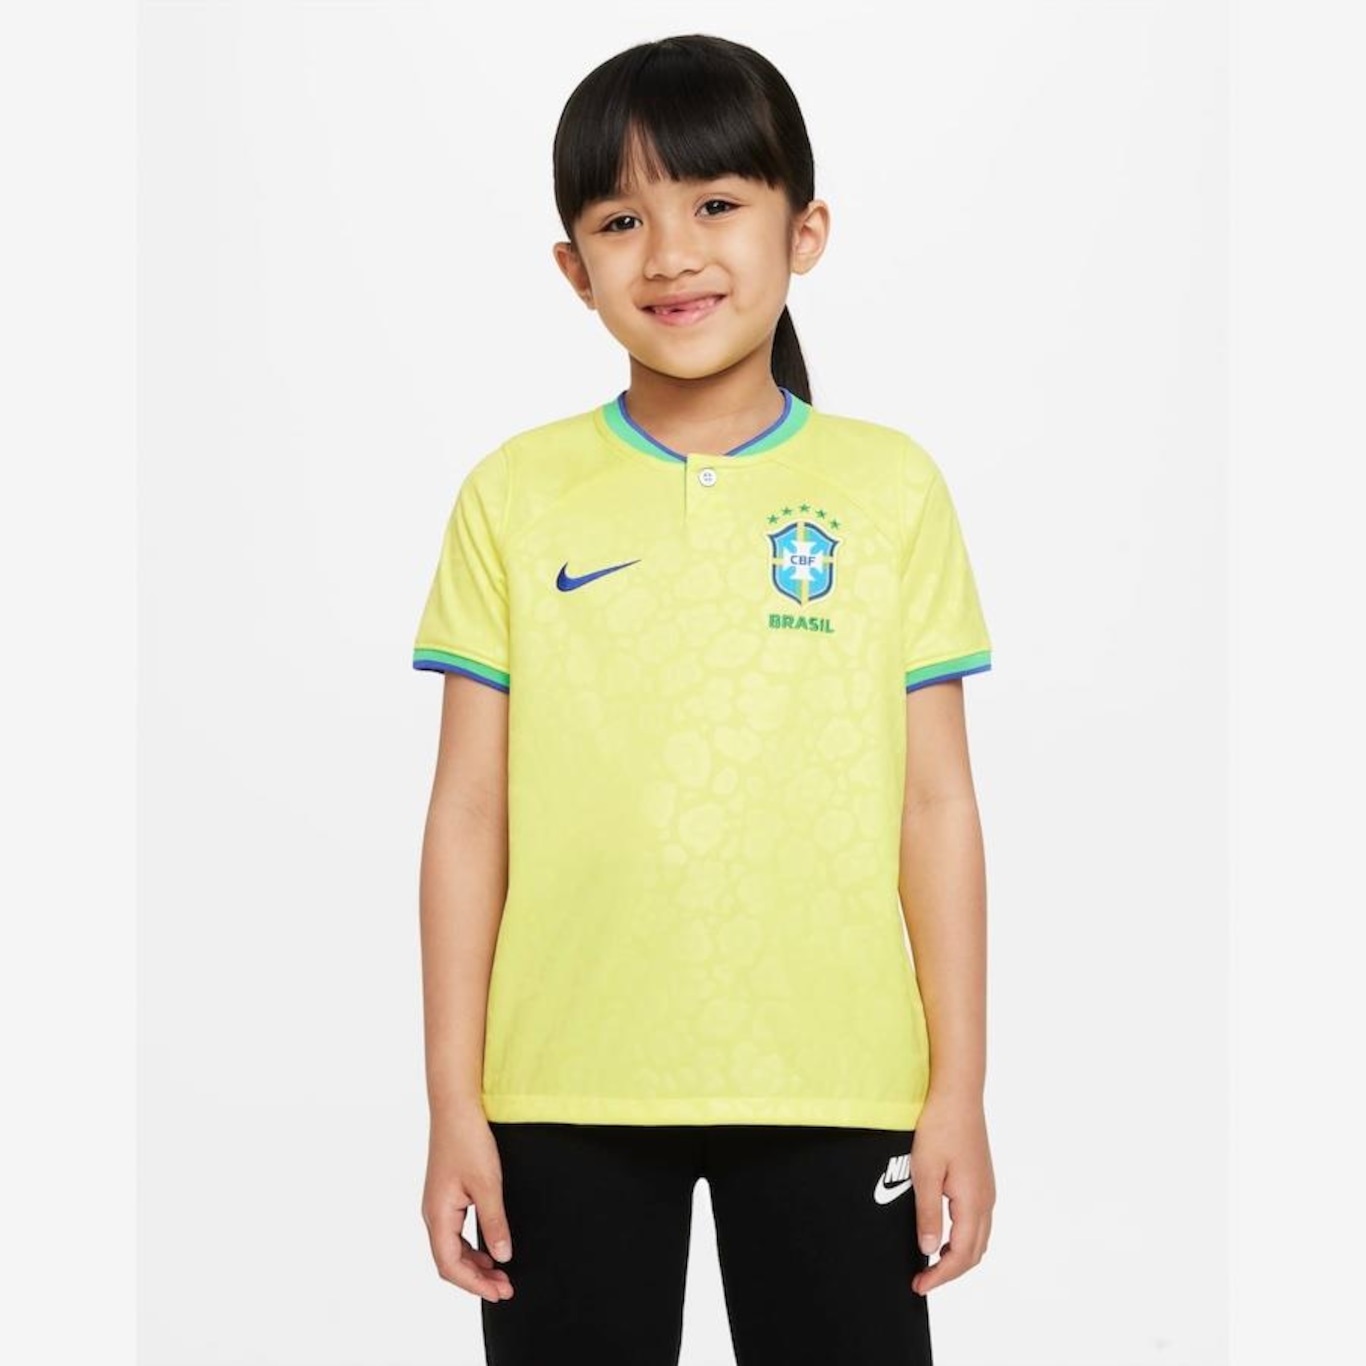 Camisa do Brasil Nike Torcedor Pro I 22/23 - Infantil - Foto 1